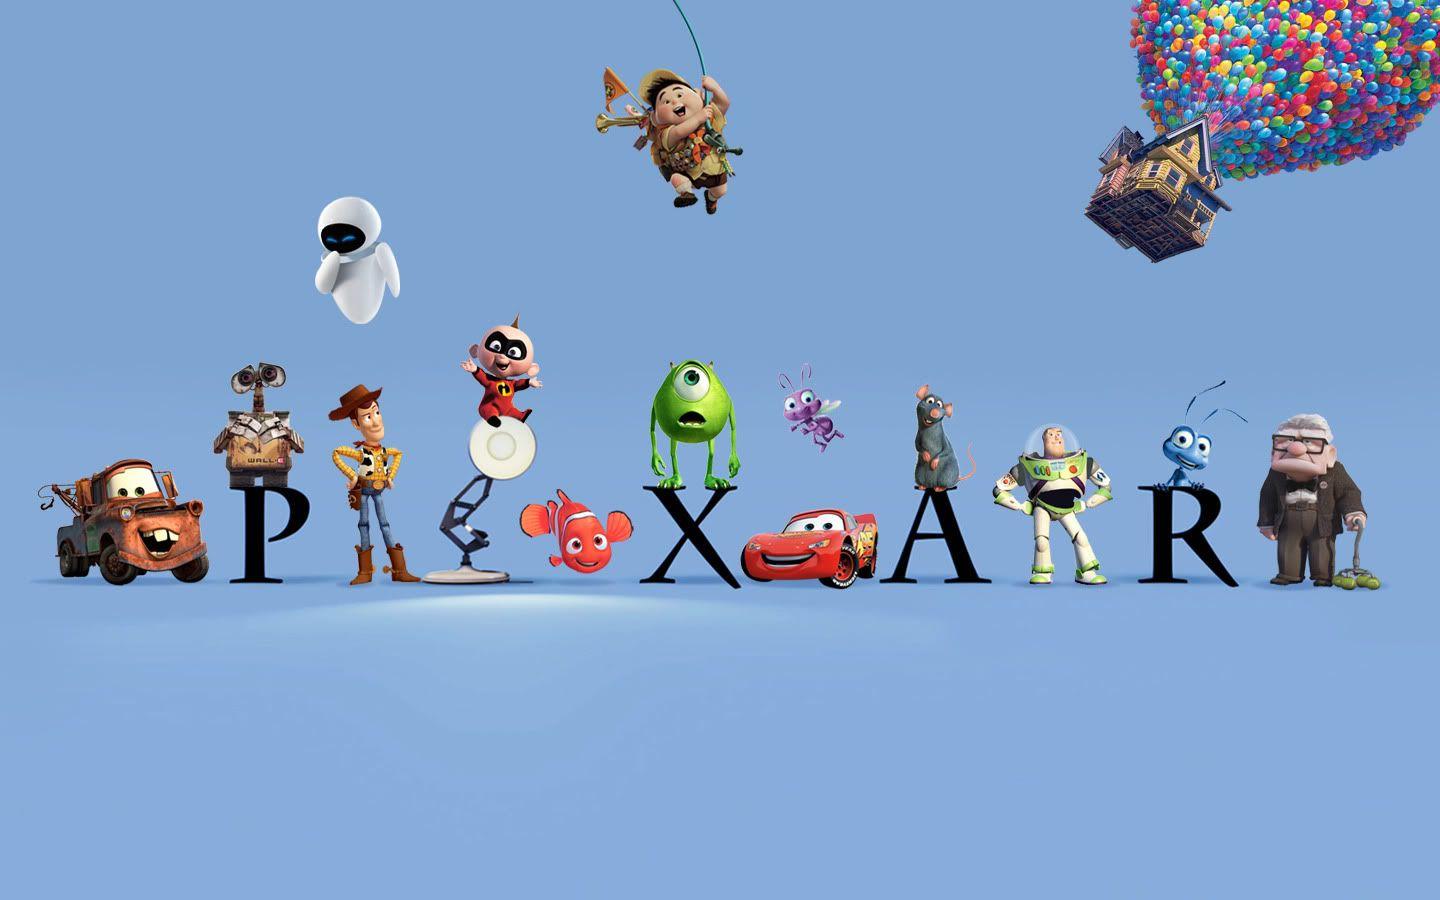 Disney Pixar Films Logo - The early versions of Pixar film stories | Den of Geek